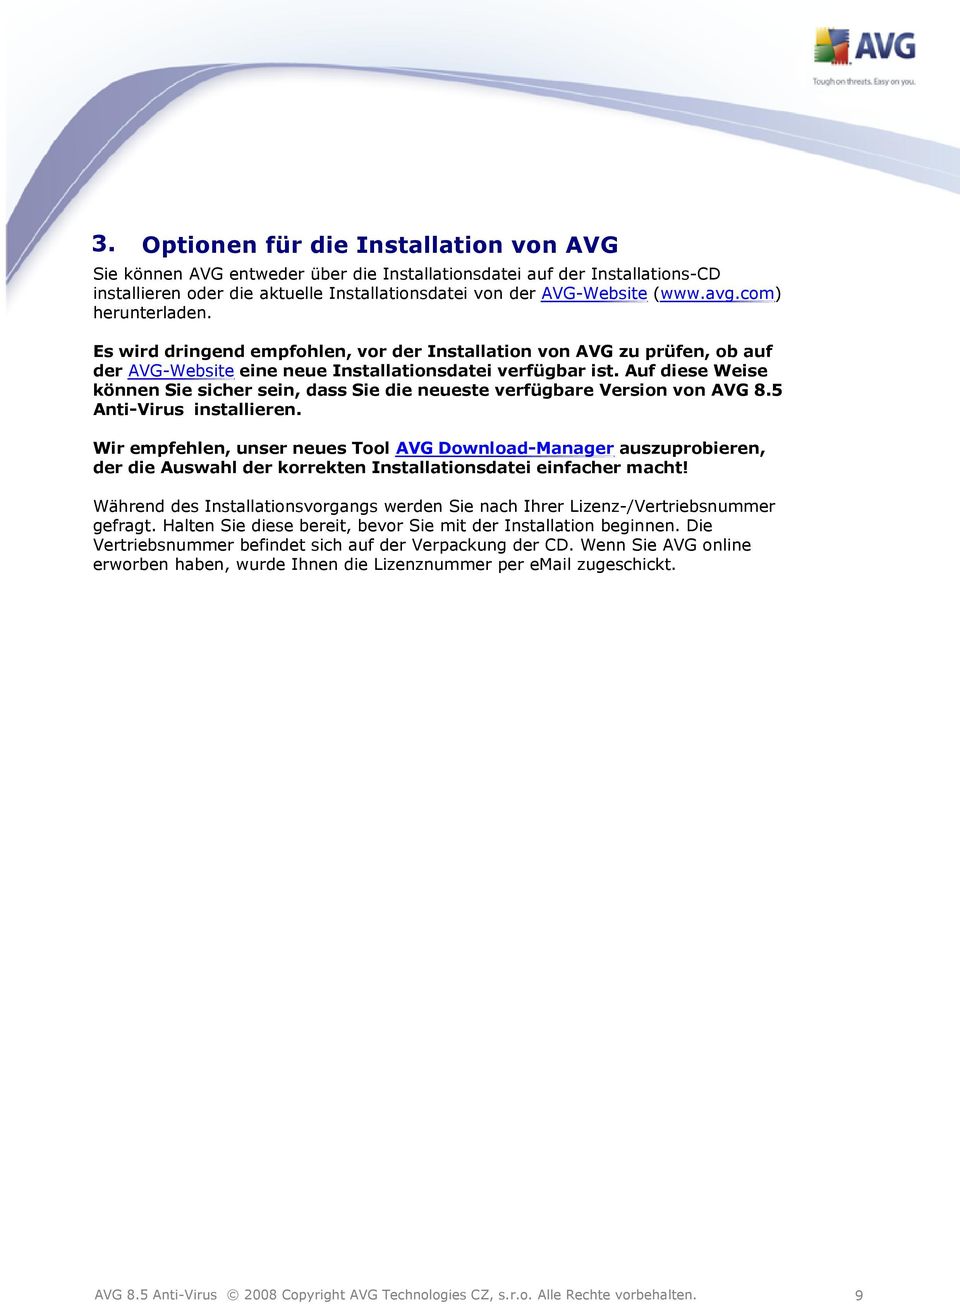 Auf diese Weise können Sie sicher sein, dass Sie die neueste verfügbare Version von AVG 8.5 Anti-Virus installieren.